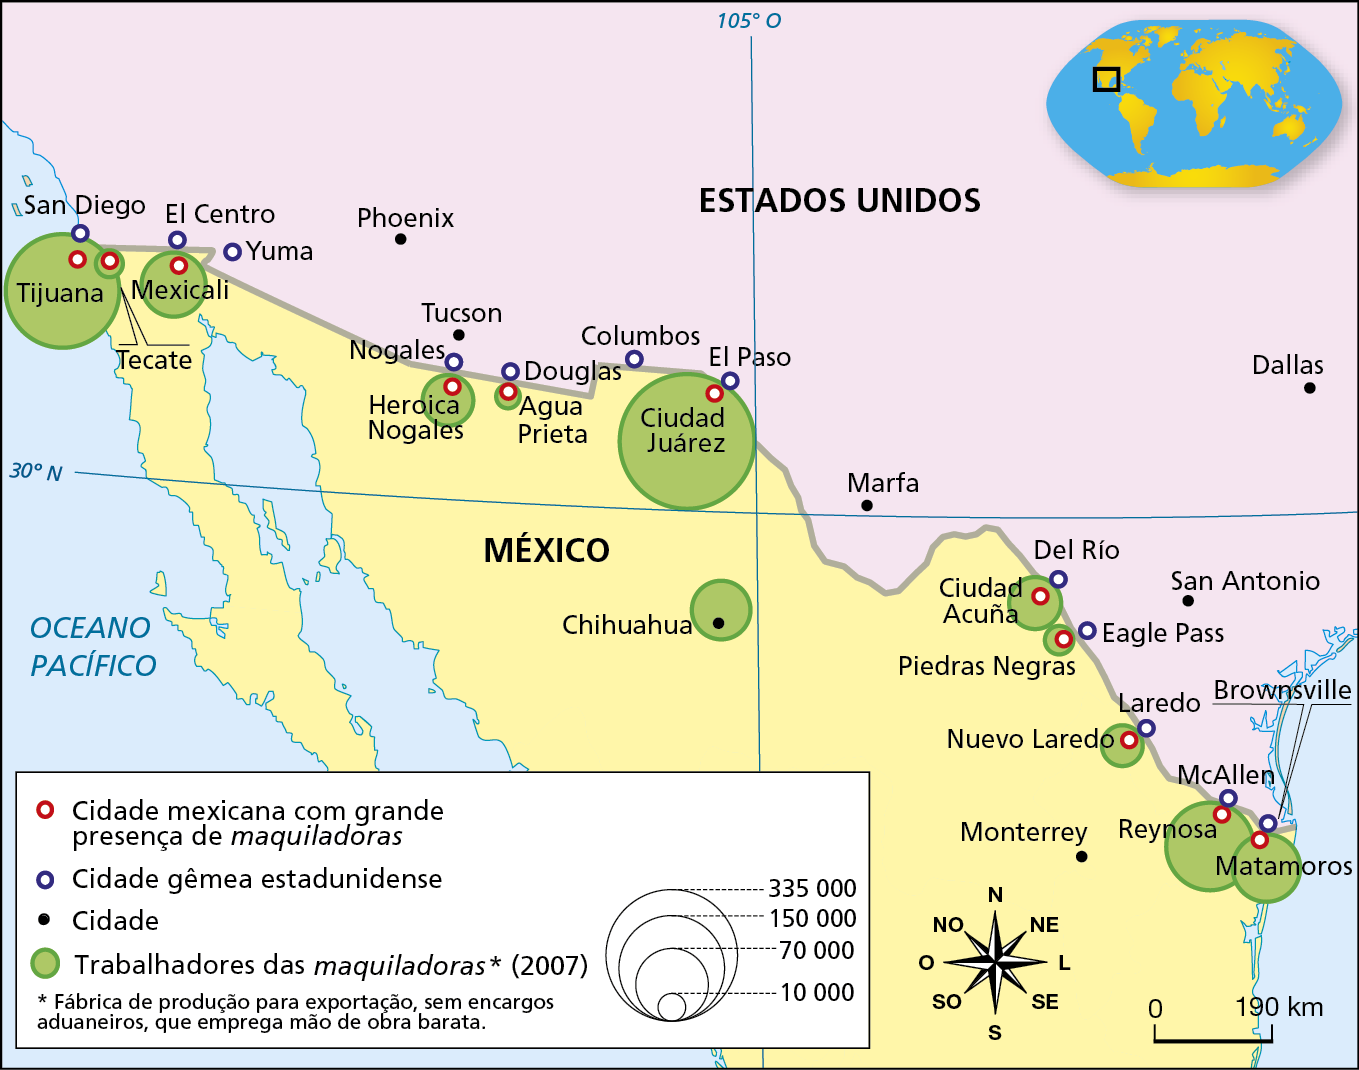 Mapa. México: maquiladoras (2010)
O mapa representa parte dos territórios do México (centro e norte) e dos Estados Unidos (centro-sul e sudoeste). O tema são as cidades mexicanas com grande presença de maquiladoras; as cidades gêmeas entre México e Estados Unidos; e a quantidade de trabalhadores nas maquiladoras em 2007: 
As cidades gêmeas: Tijuana (gêmea mexicana) e San Diego (gêmea norte-americana); Mexicali (gêmea mexicana) e El Centro (gêmea norte-americana); Heroica Nogales (gêmea mexicana) e Nogales (gêmea norte-americana); Agua Prieta (gêmea mexicana) e Douglas (gêmea norte-americana); Ciudad Juarez (gêmea mexicana) e El Paso (gêmea norte-americana), Ciudad Acuña (gêmea mexicana) e Del Rio (gêmea norte-americana); Piedras Negras (gêmea mexicana) e Eagle Pass (gêmea norte-americana); Nuevo Laredo (gêmea mexicana) e Laredo (gêmea norte-americana); Reynosa (gêmea mexicana) e McAllen (gêmea norte-americana); Matamoros (gêmea mexicana) e Brownsville (gêmea norte-americana).
O mapa indica, em território estadunidense, a localização das cidades de Phoenix, Tucson, Marfa, Dallas, San Antonio; em território mexicano, está indicada a cidade de Monterrey. 
Cidades com trabalhadores das maquiladoras em 2007 (em milhares de pessoas). 335.000: Ciudad Ruarez. 160.000: Tijuana. 140.000: Reynosa. 70.000: Mexicali, Matamoros, Chihuahua. 50.000: Heroica Nogales, Ciudad Acunha. 20.000: Nuevo Larede. 10.000: Agua Prieta, Piedras Negras. 
Na parte inferior, rosa dos ventos e escala de 0 a 190 quilômetros.